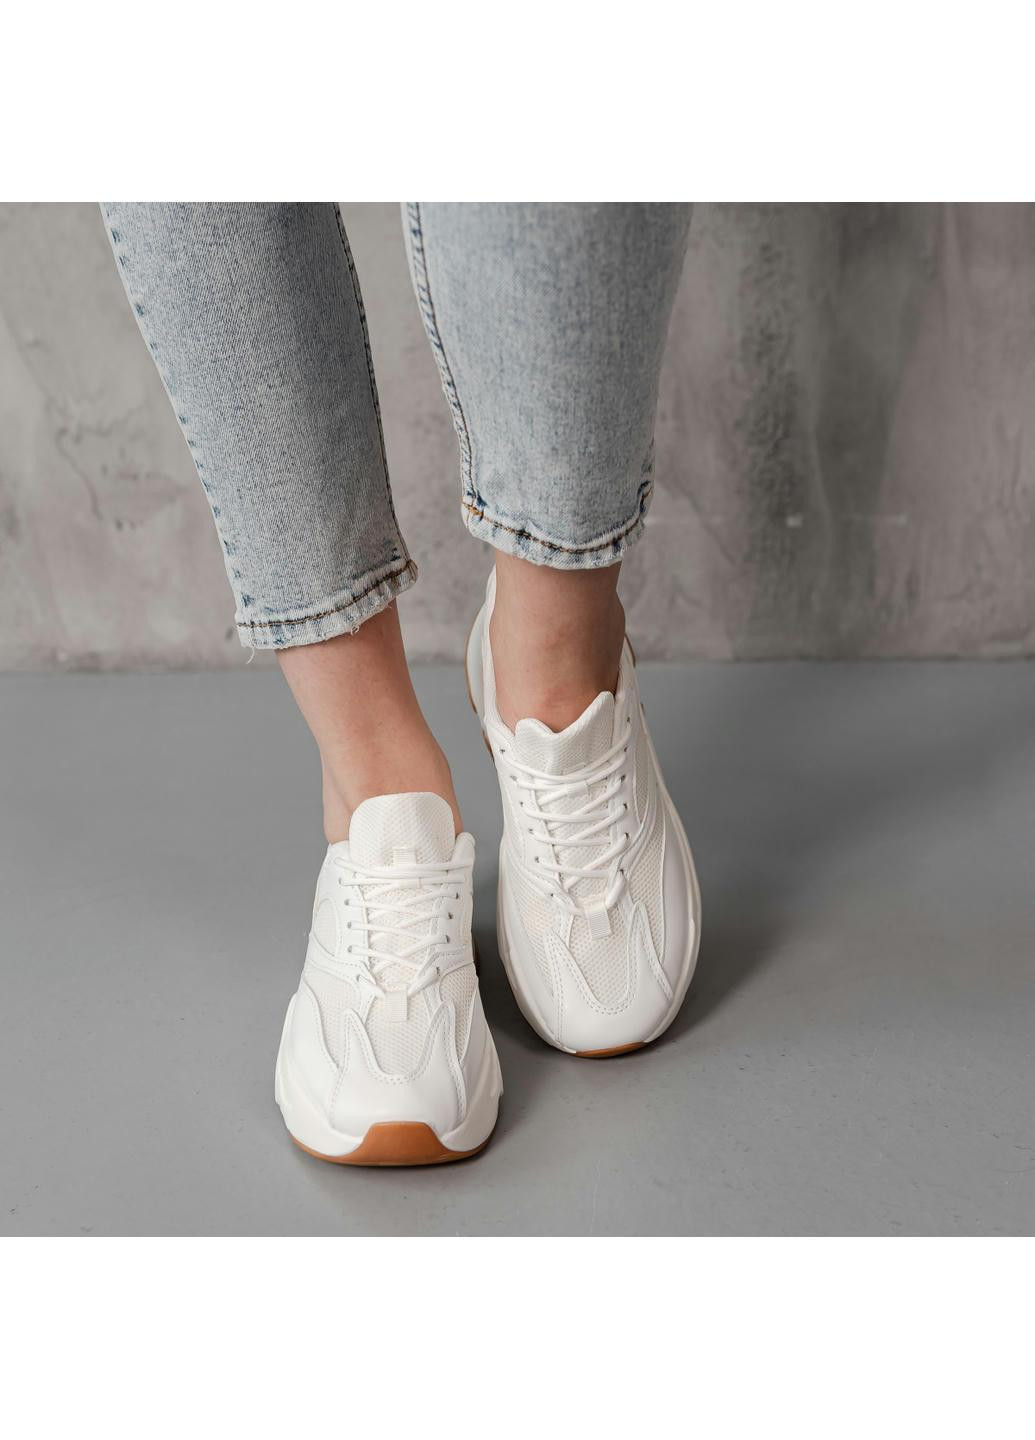 Белые демисезонные кроссовки женские charlote 3951 23 белый Fashion